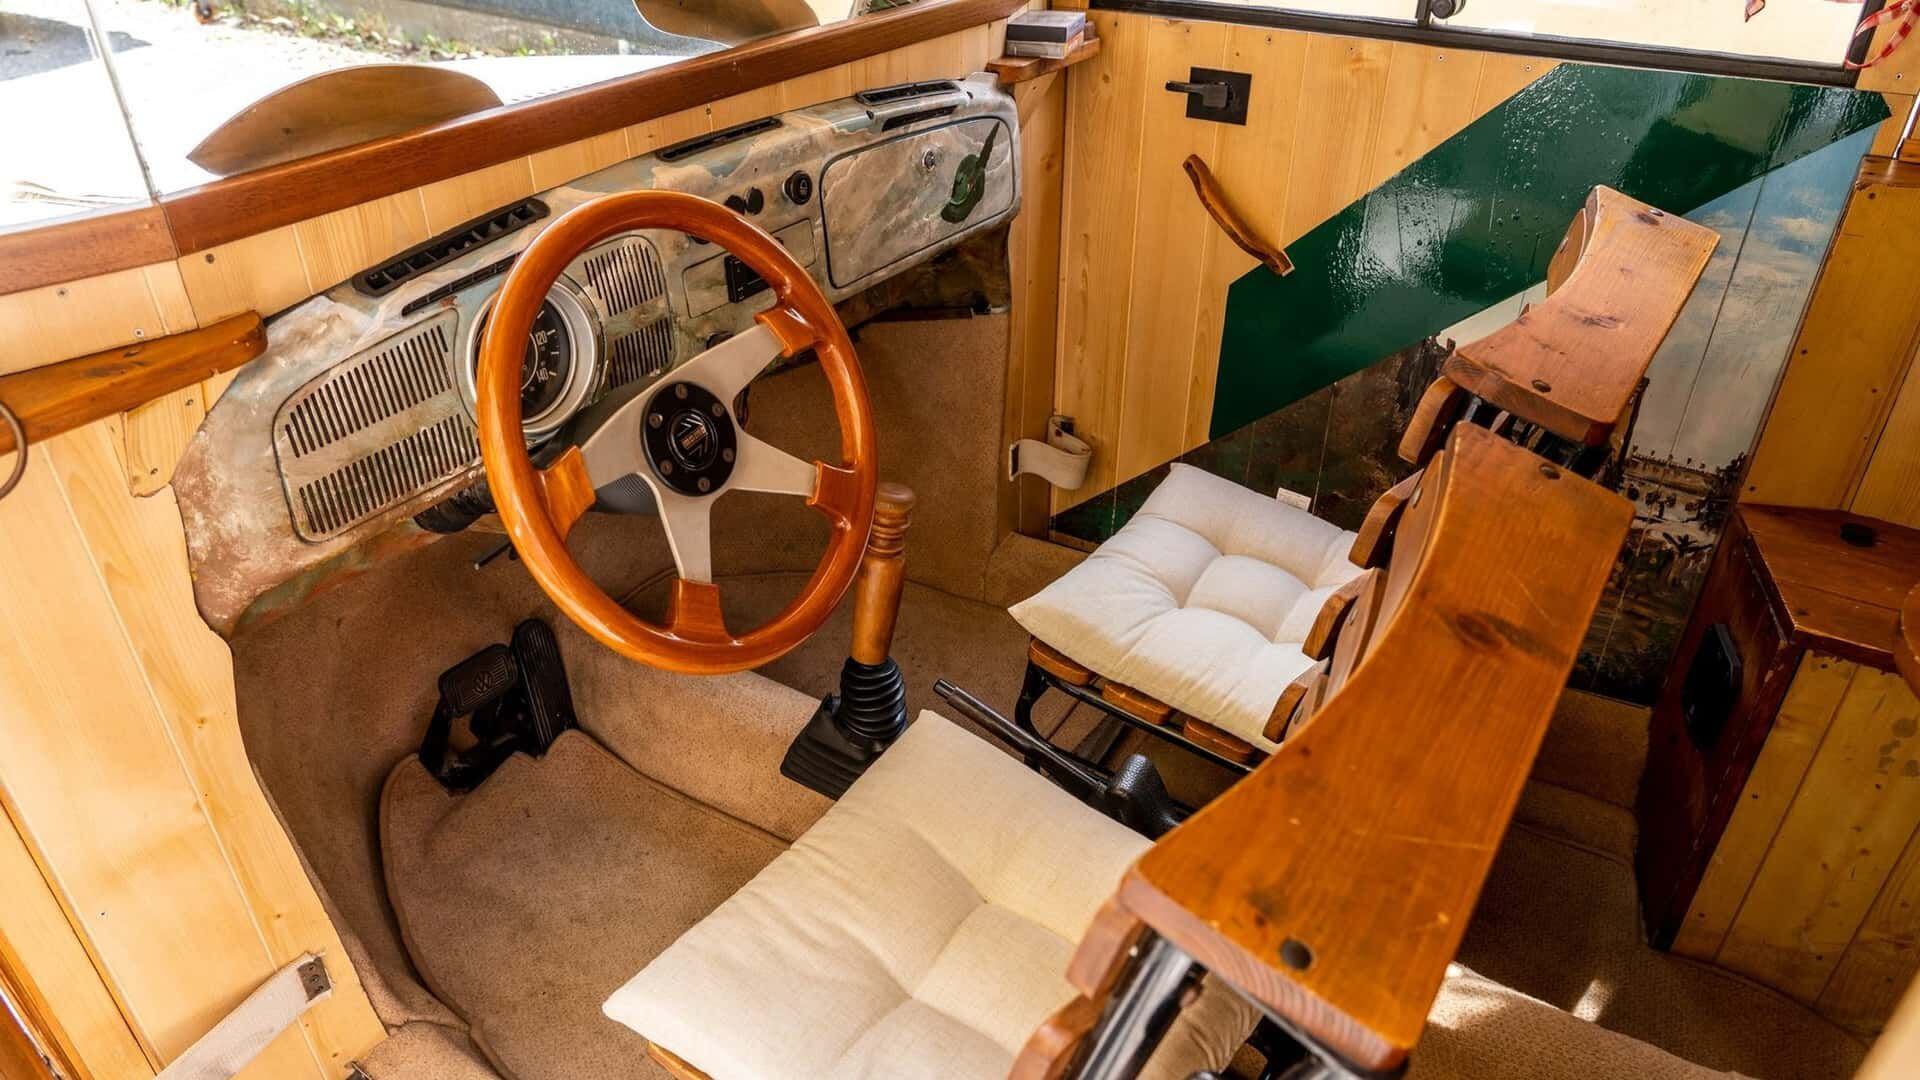 El volante y la palanca de cambios también son de madera. Todo el piso interior está cubierto de una cálida alfombra